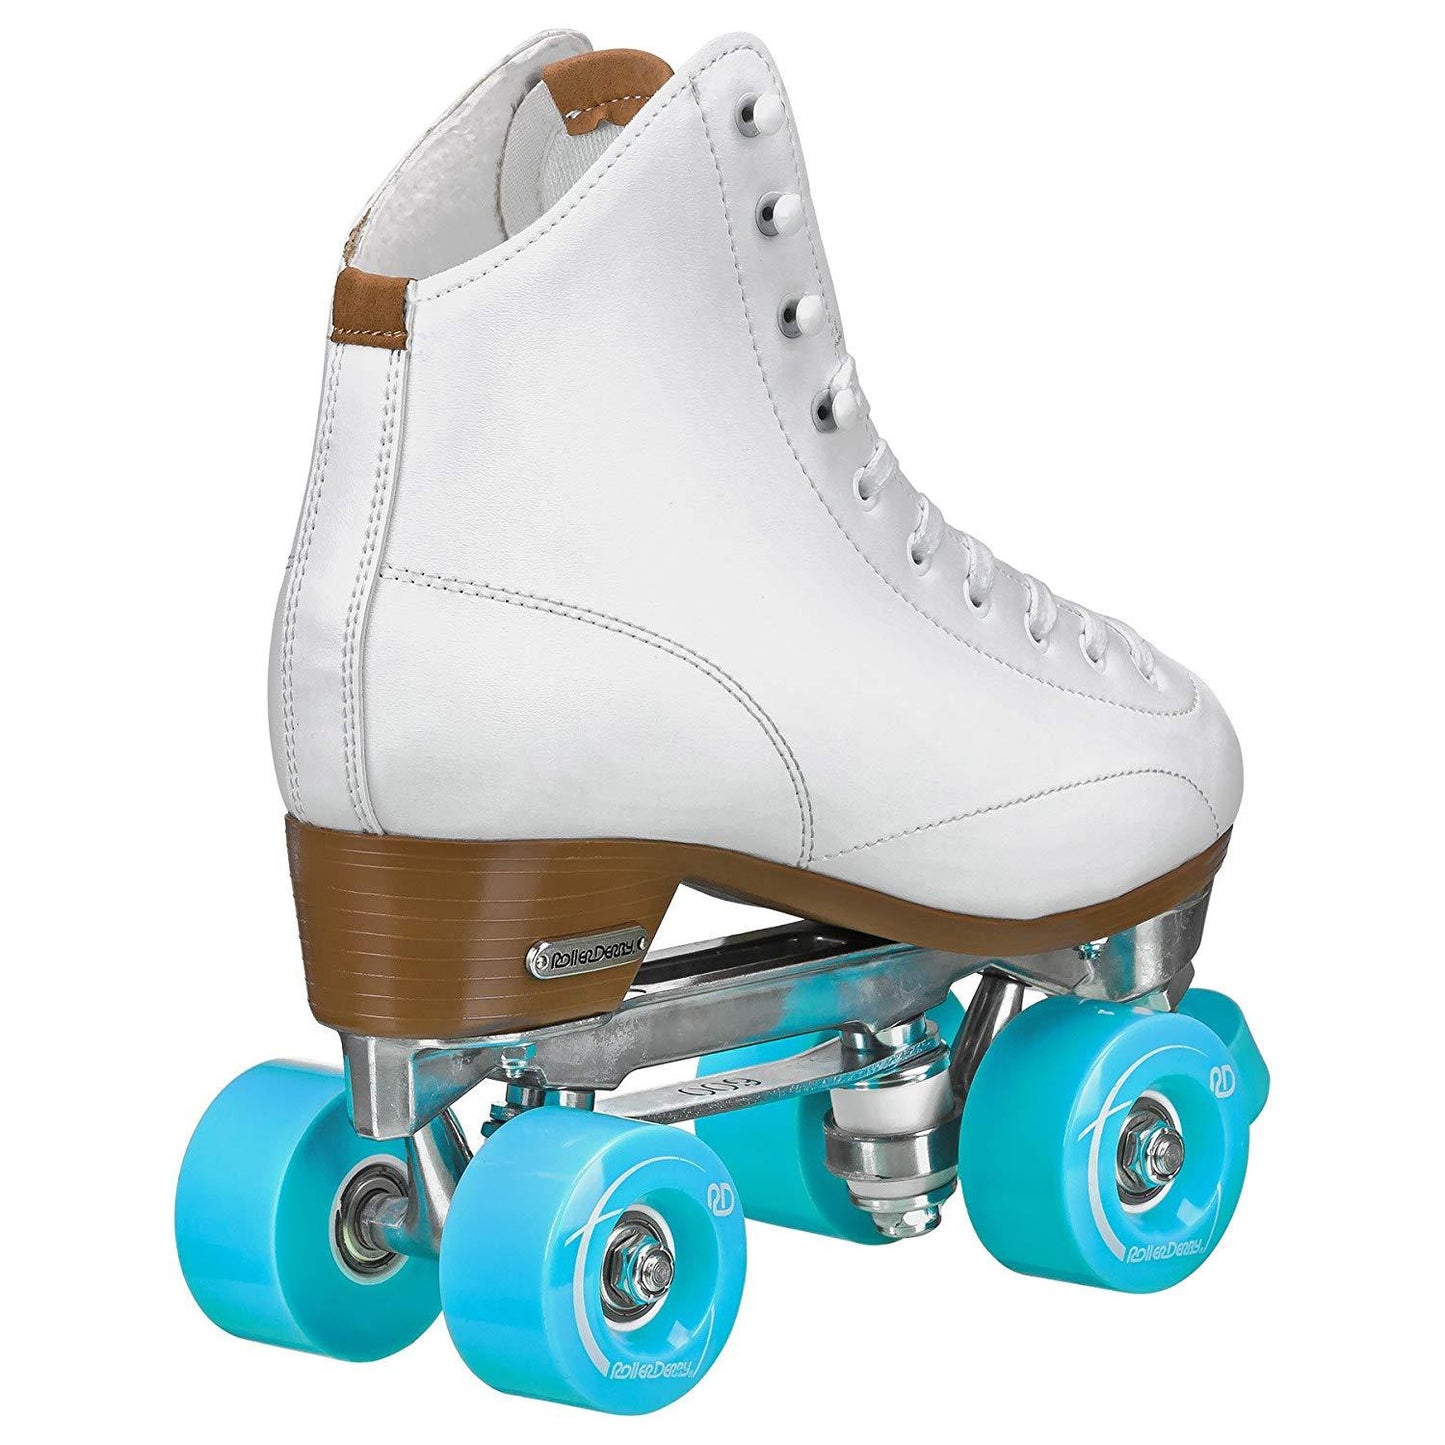 RDS Cruze XR9 White Roller Skates - US6